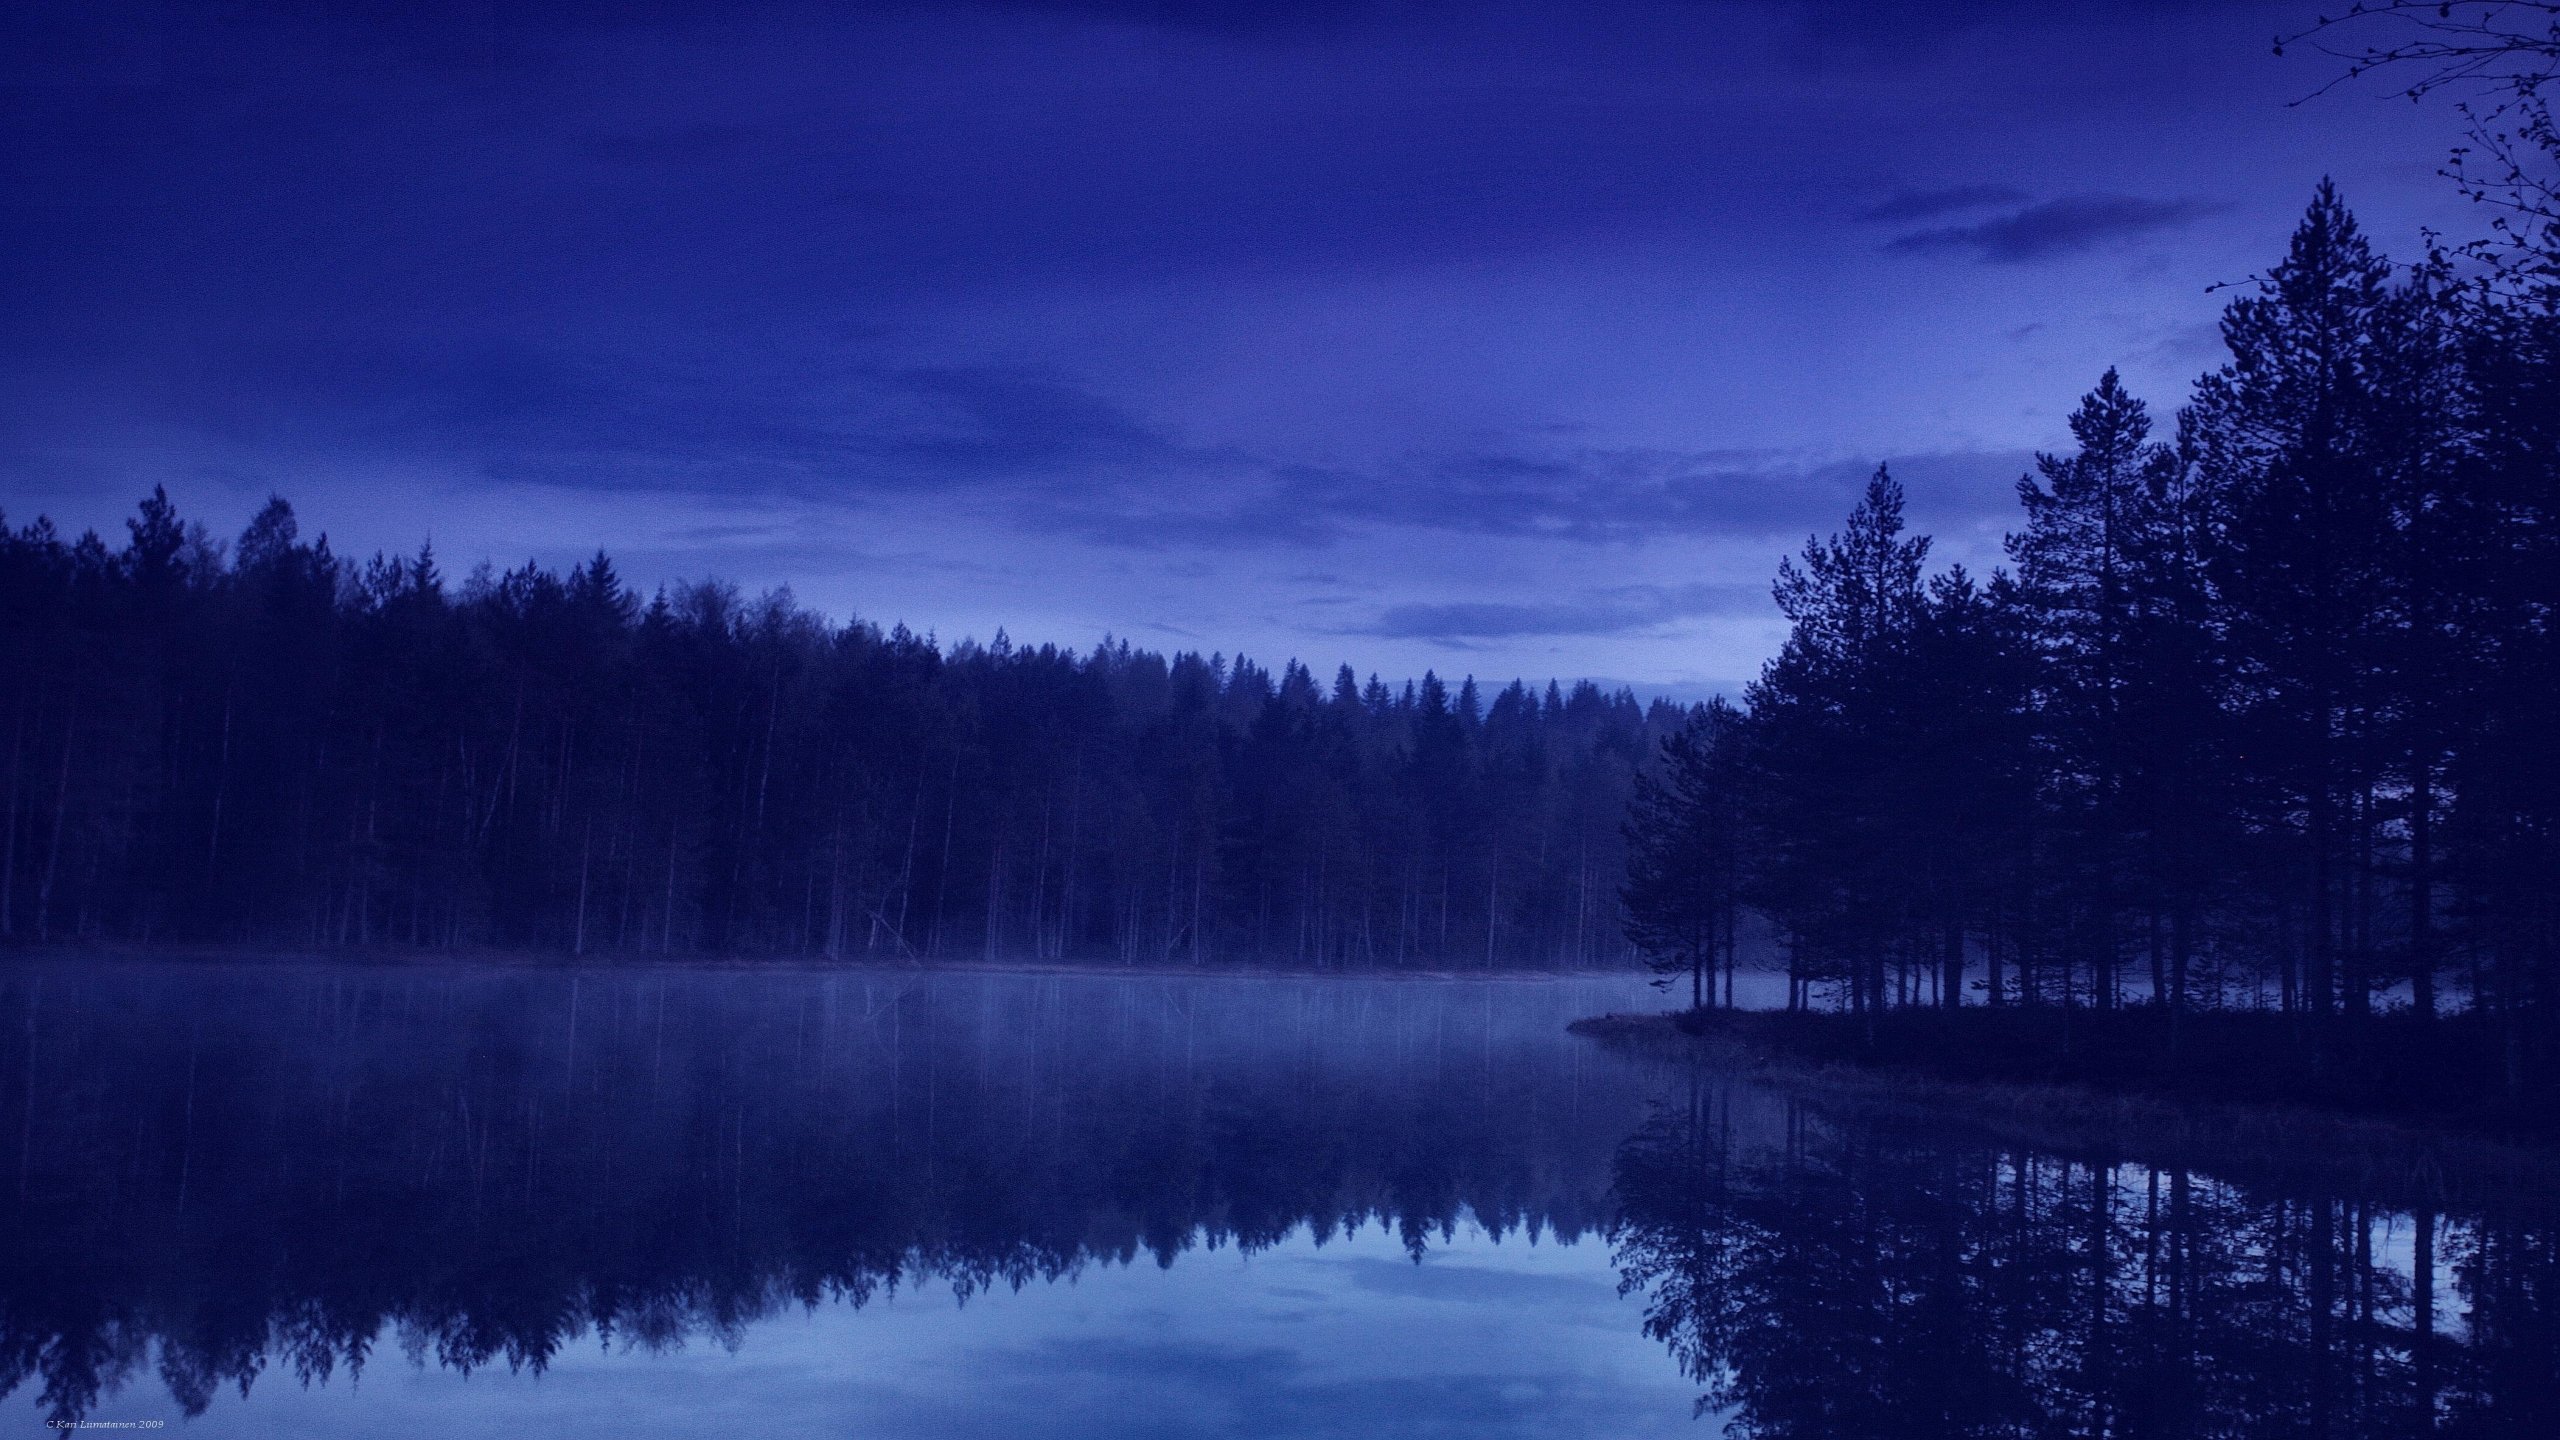 Lake Wallpaper Night Blue